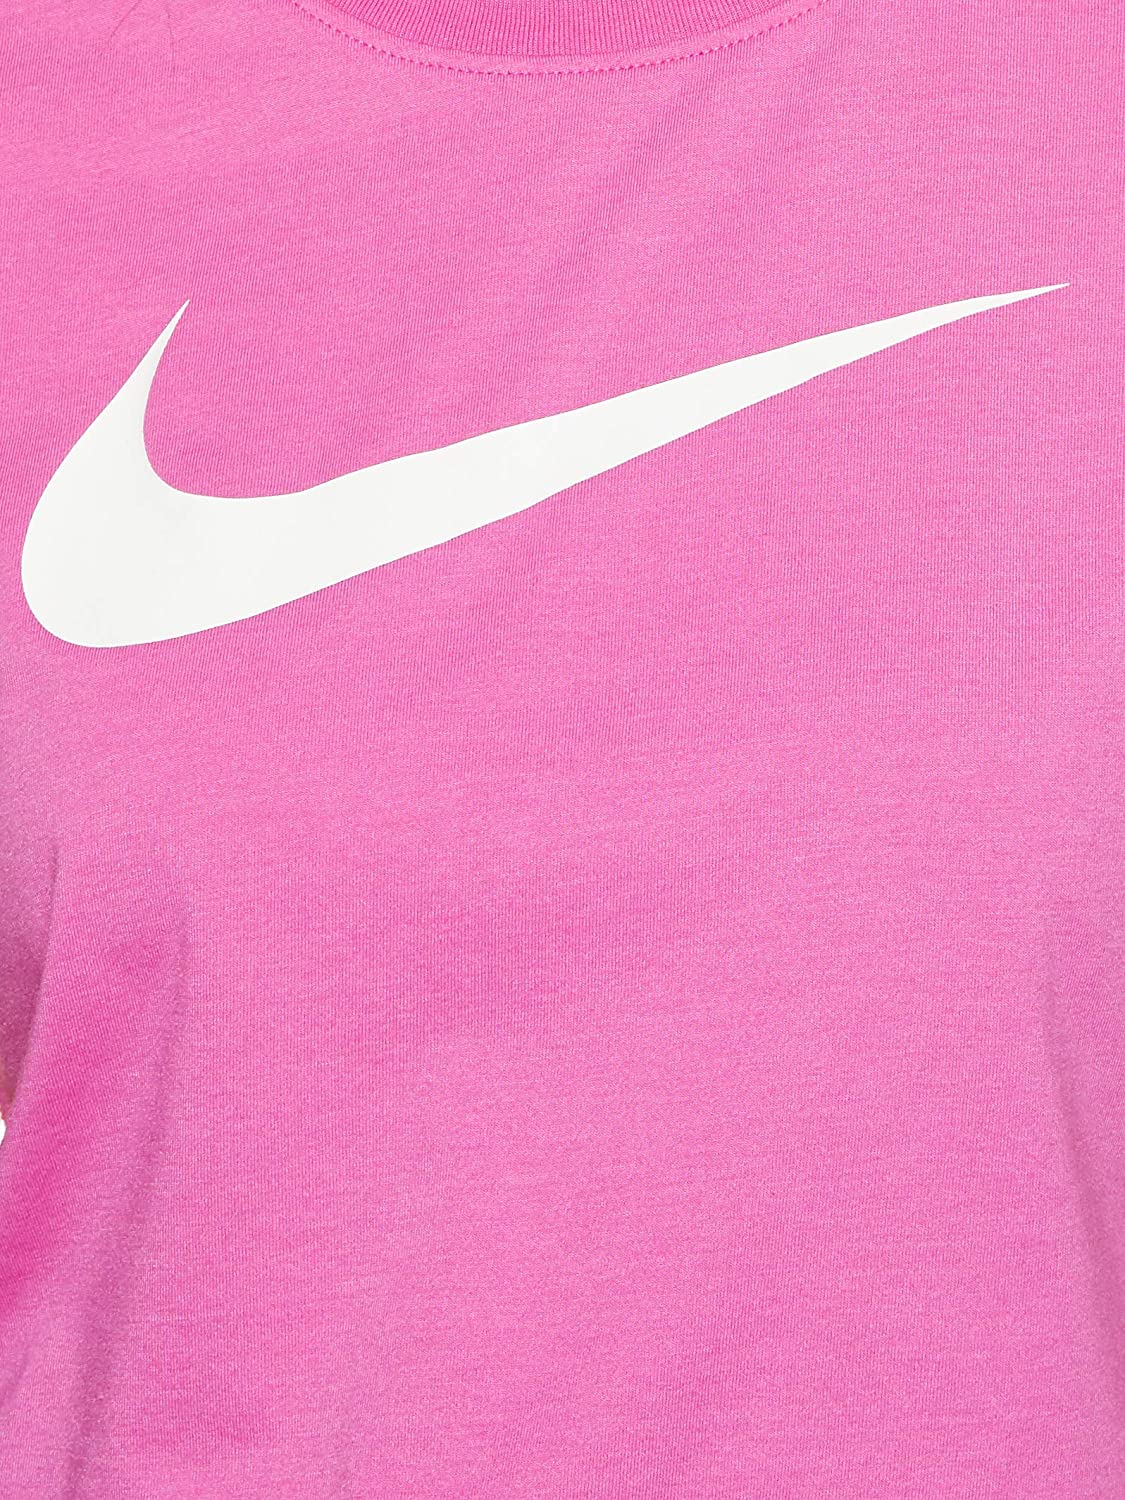 Nike Womens Short Sleeve Crop Top